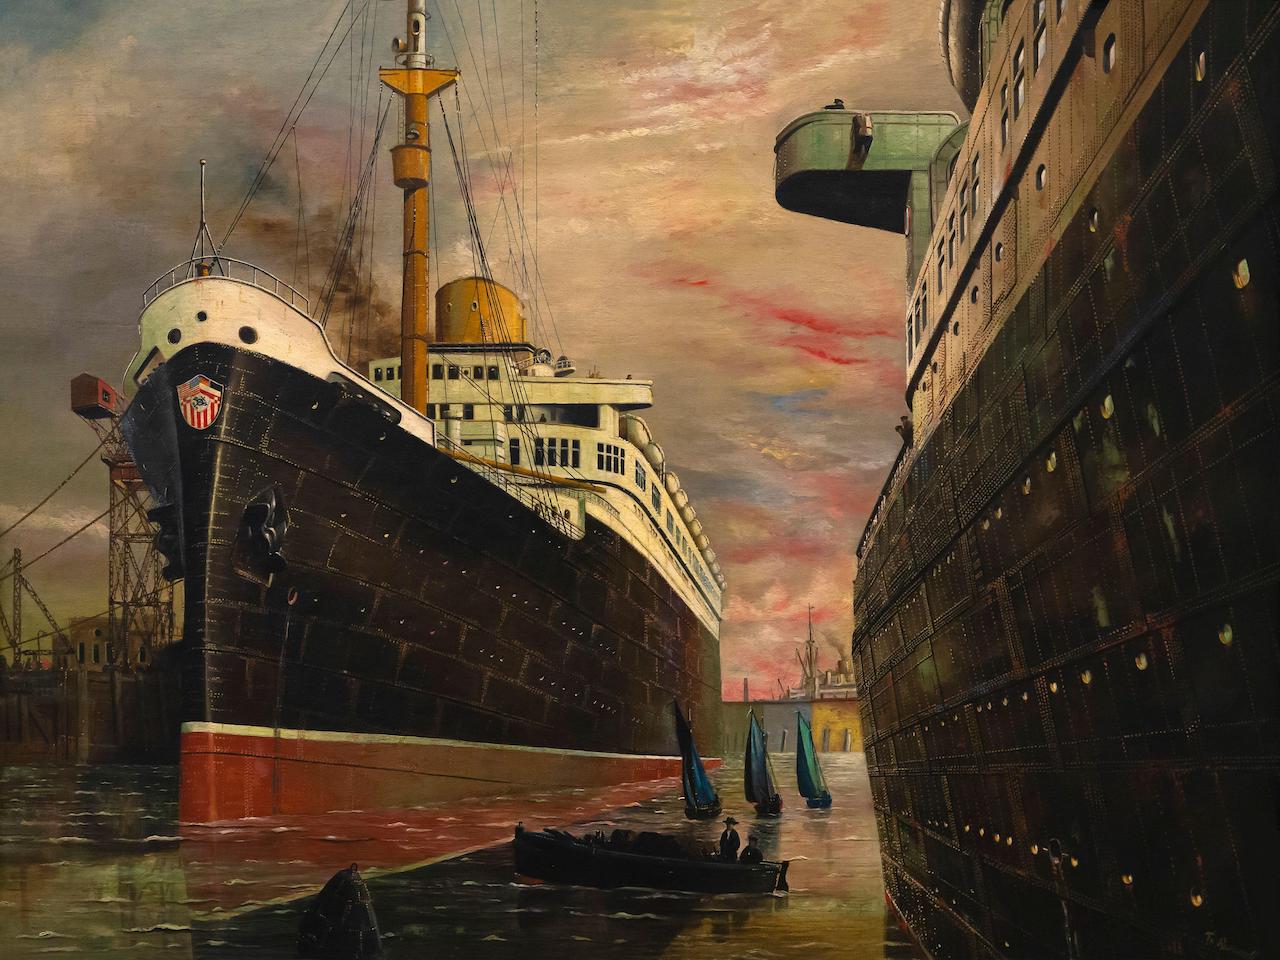 Franz Radziwill. Der Hafen II. 1930. Öl / Leinwand. 76 x 99,5cm